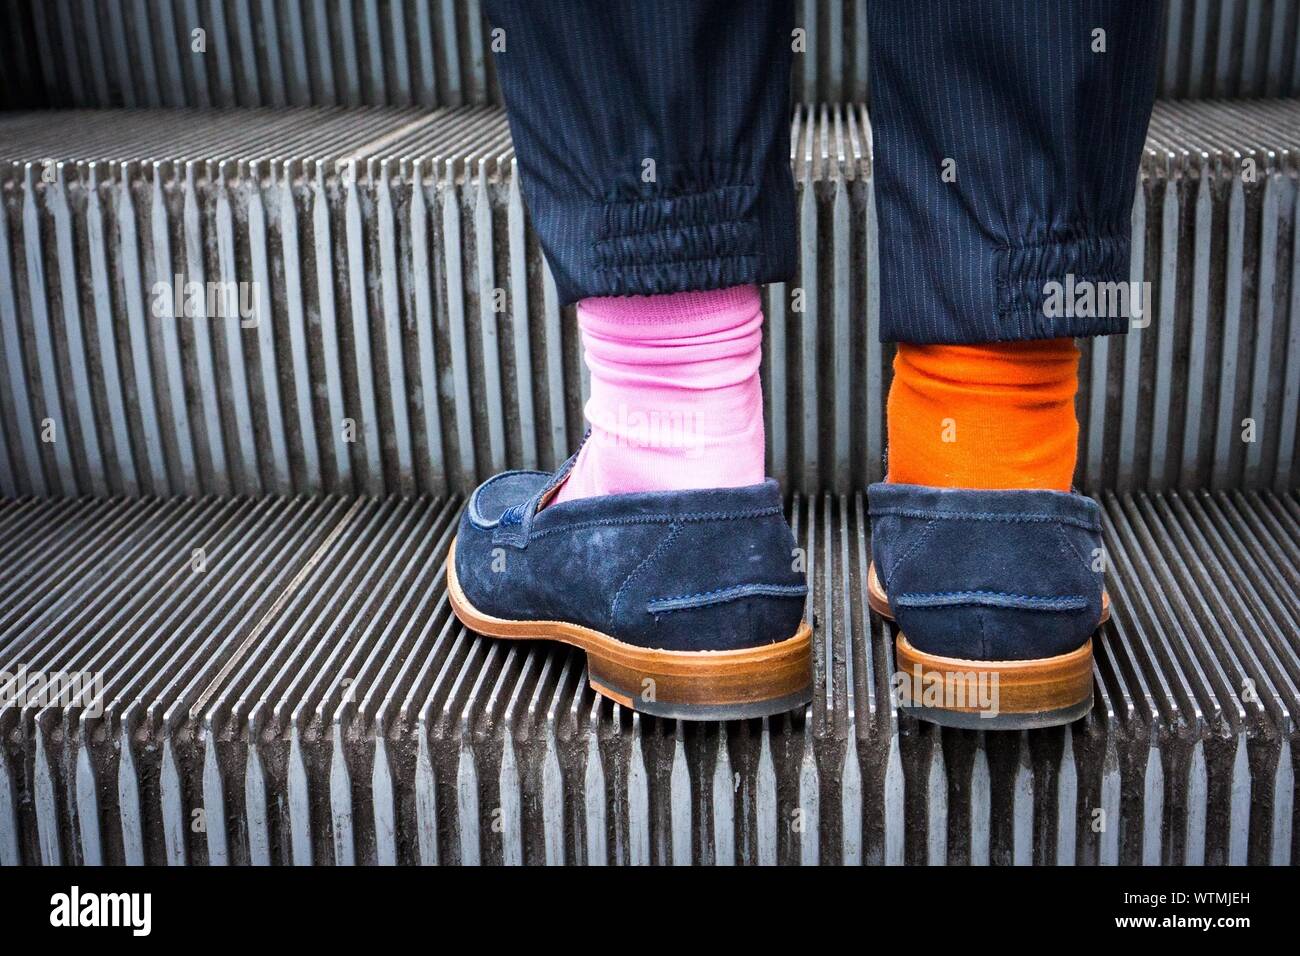 Mittelteil einer Person tragen zwei verschiedene Socken an Escalator  Stockfotografie - Alamy